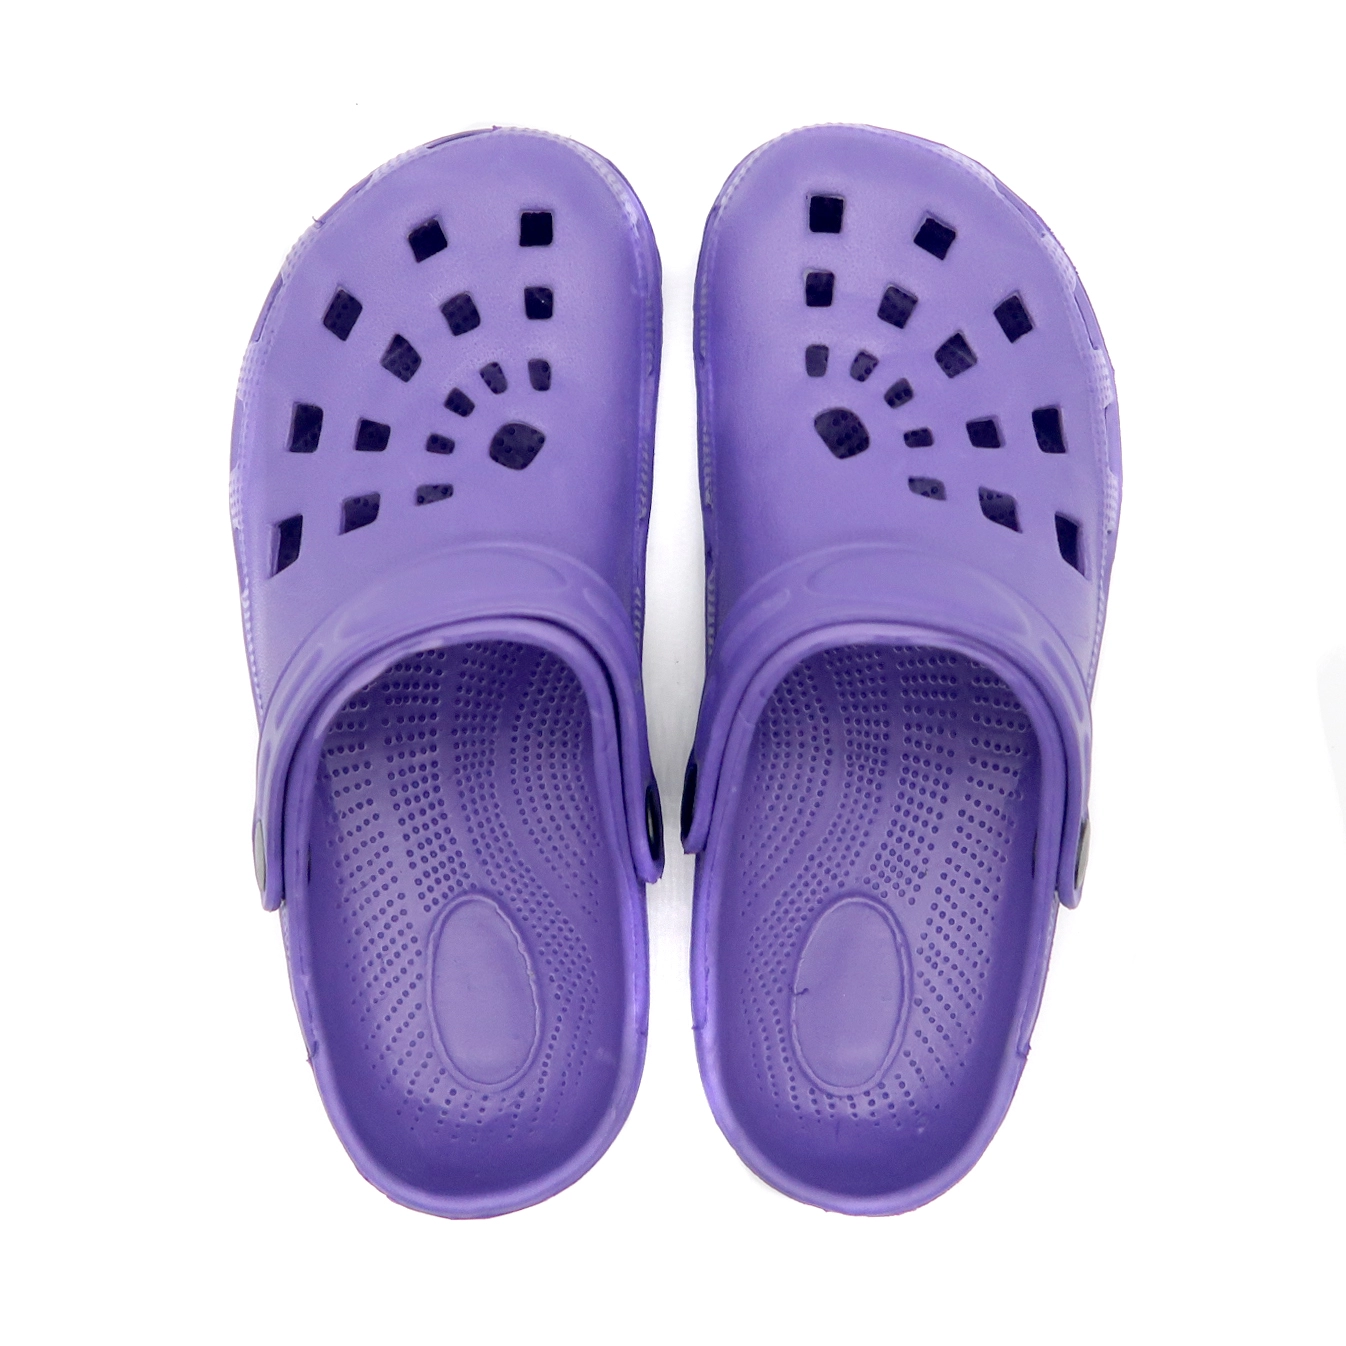 Venta al por mayor de zapatos de zueco transpirable Anti-Slippery de verano personalizado